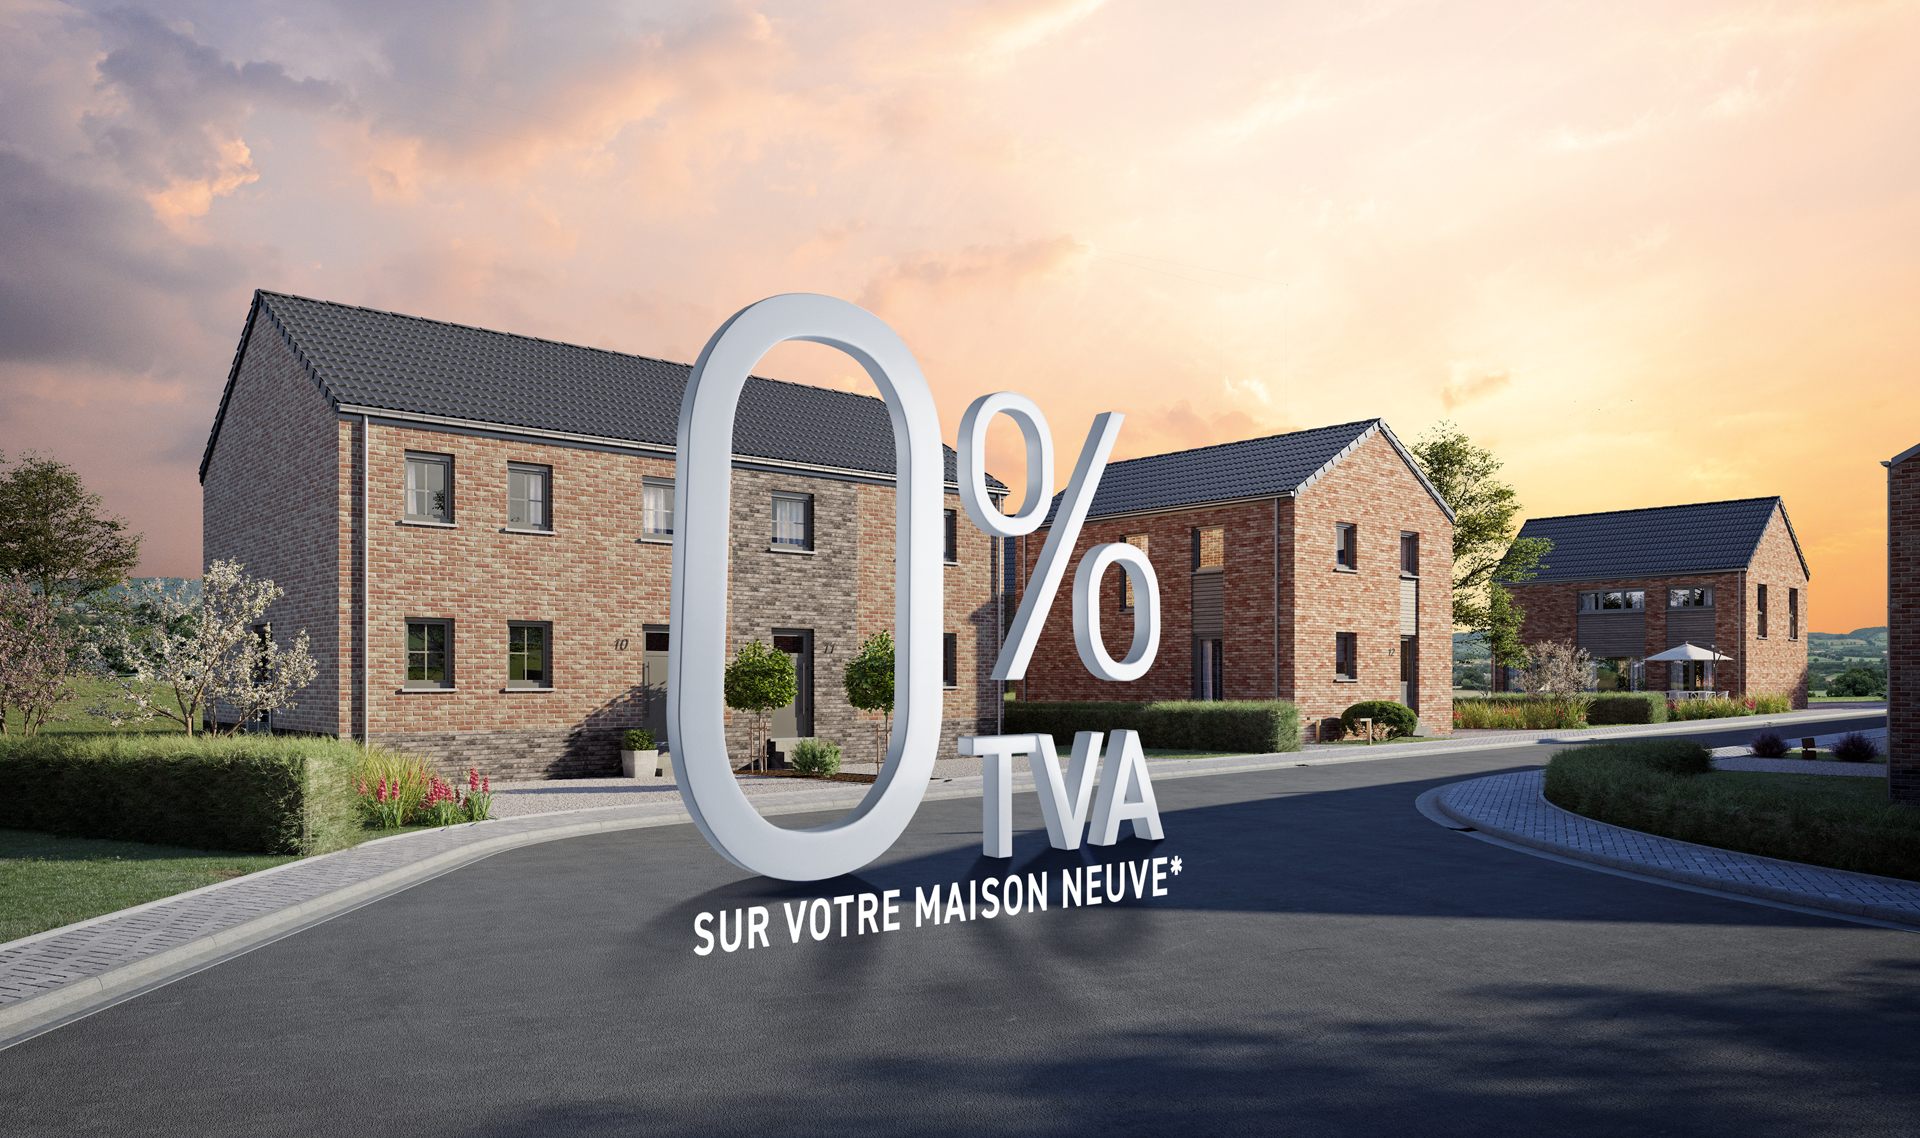 0% de TVA sur votre maison neuve